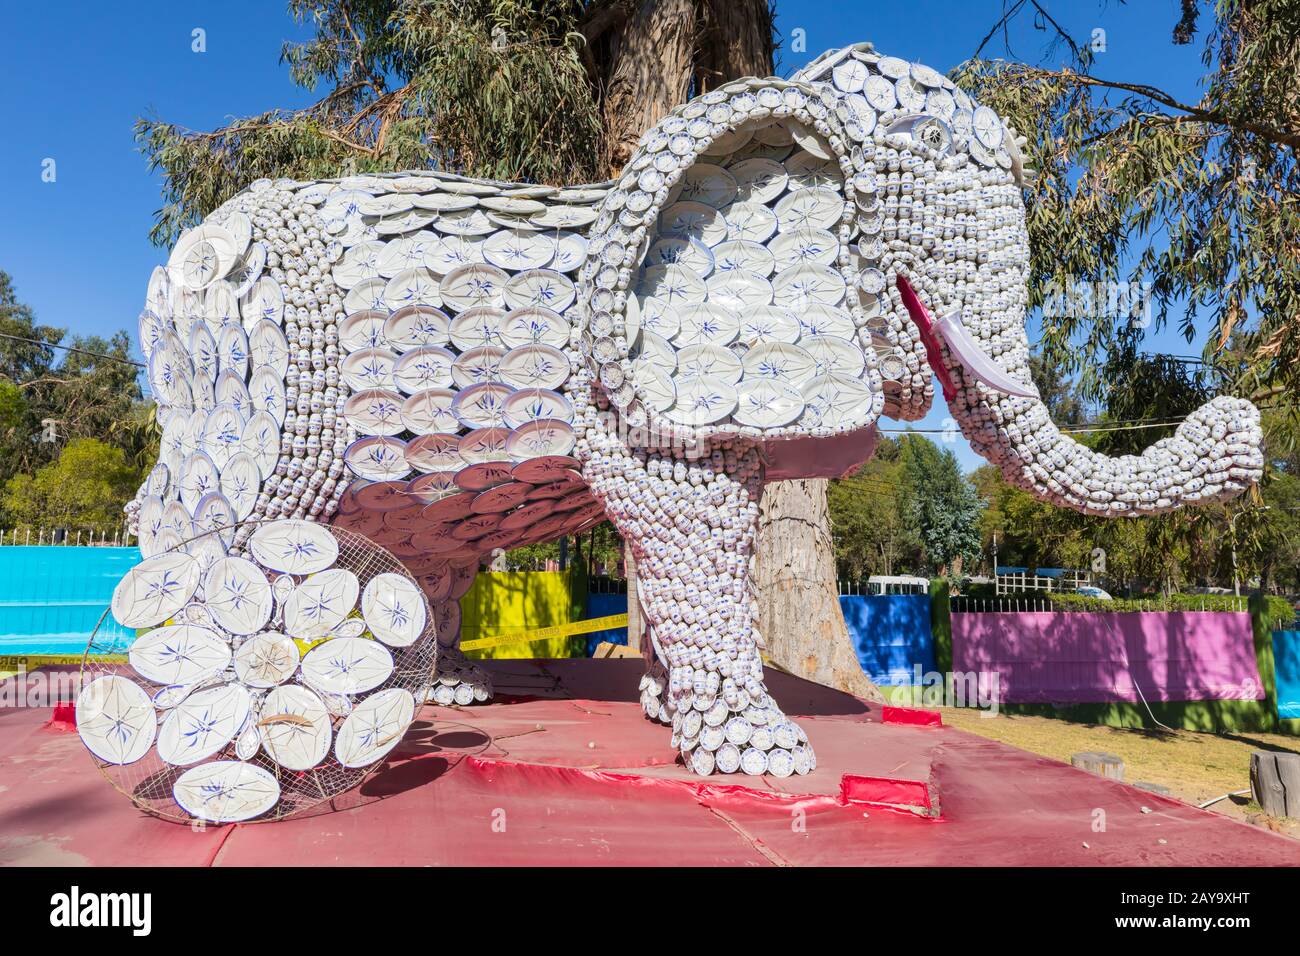 Chinesische Skulptur in Form des Elefantenparks Selva Alegre Arequipa Peru Stockfoto